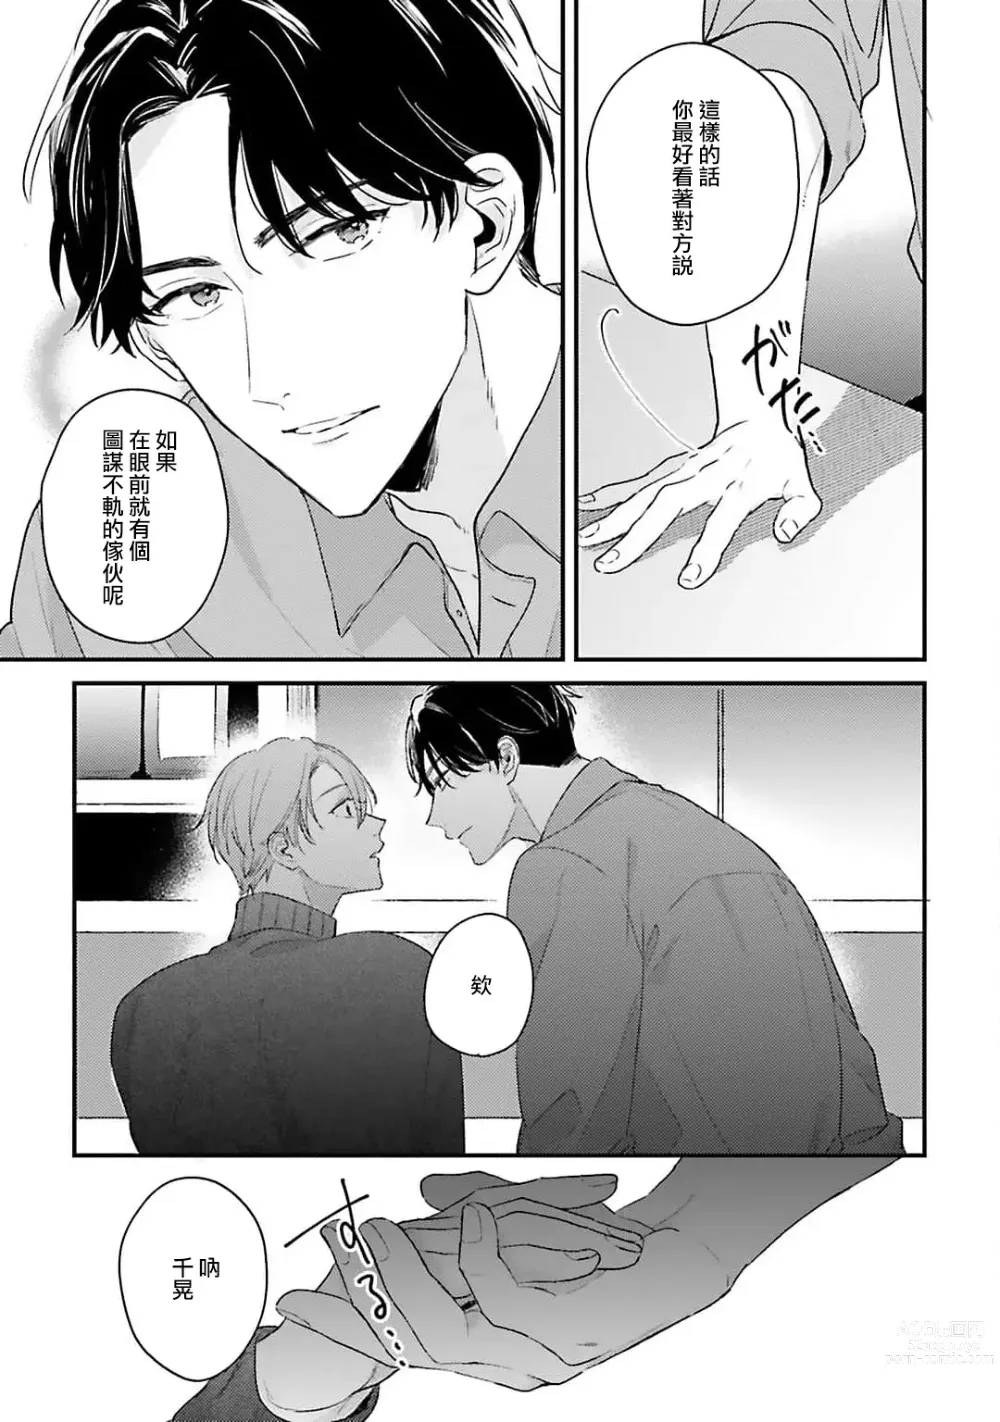 Page 24 of manga 绽放的恋爱皆为醉与甜1